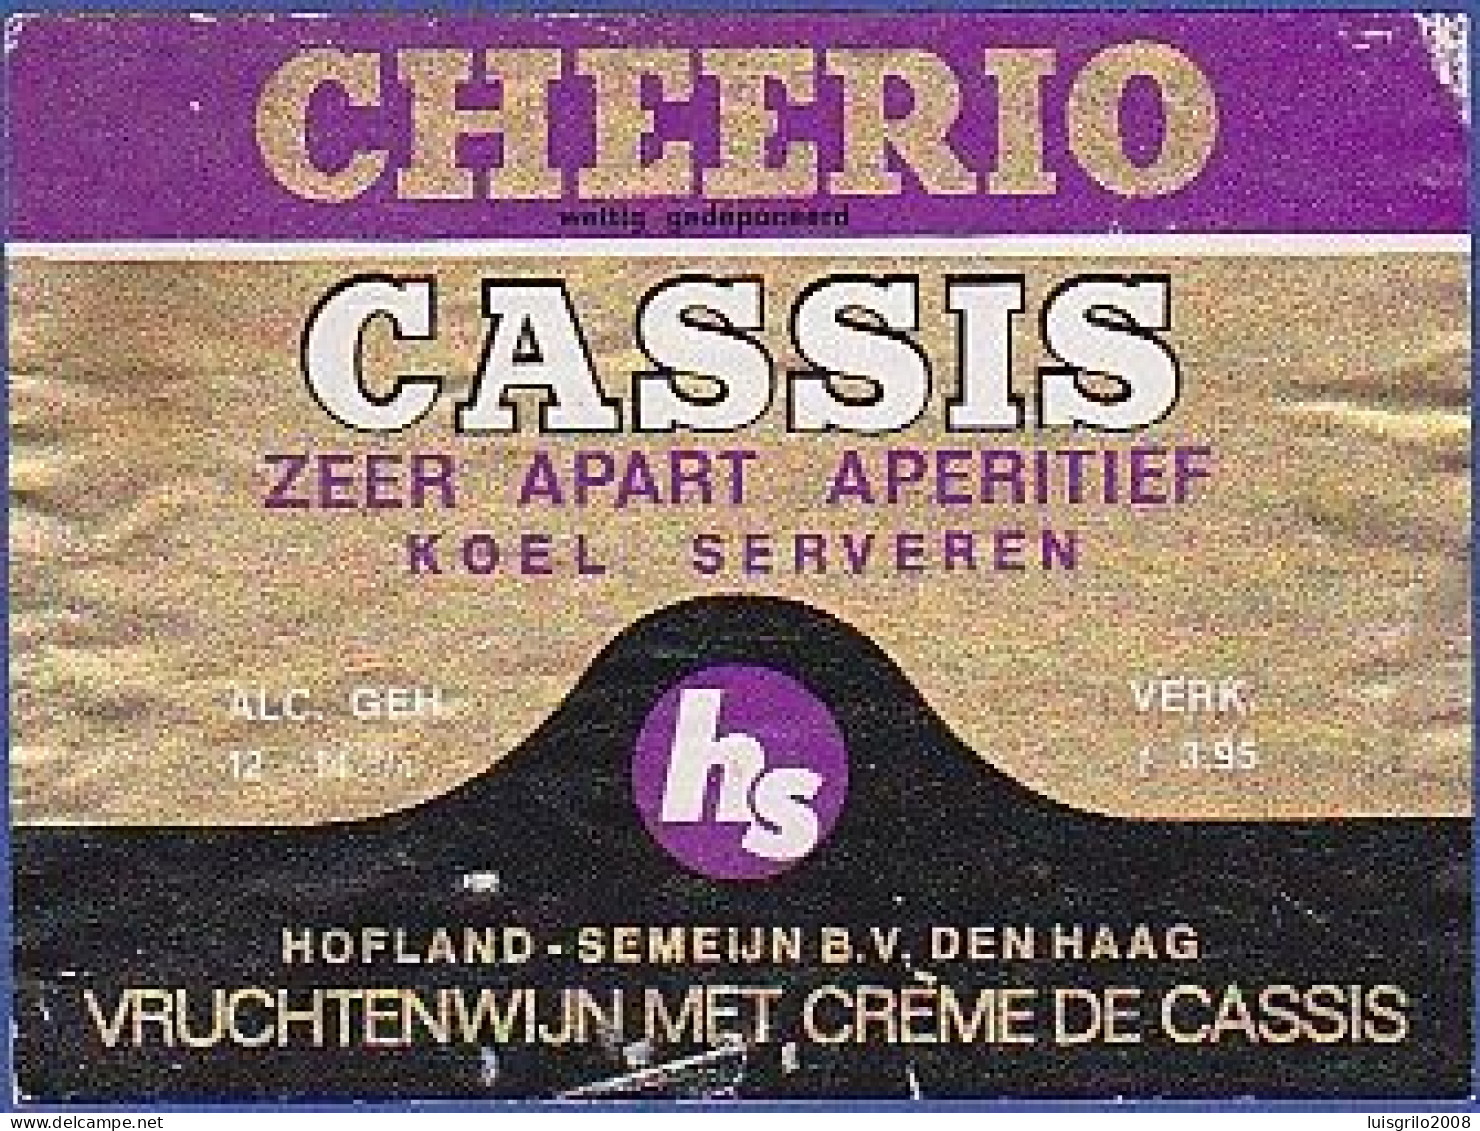 CHEERIO - CASSIS. Zeer Apart Aperitif. Koel Serveren -|- Vruchtenwijn Met Crème De Cassis - Alcoholes Y Licores